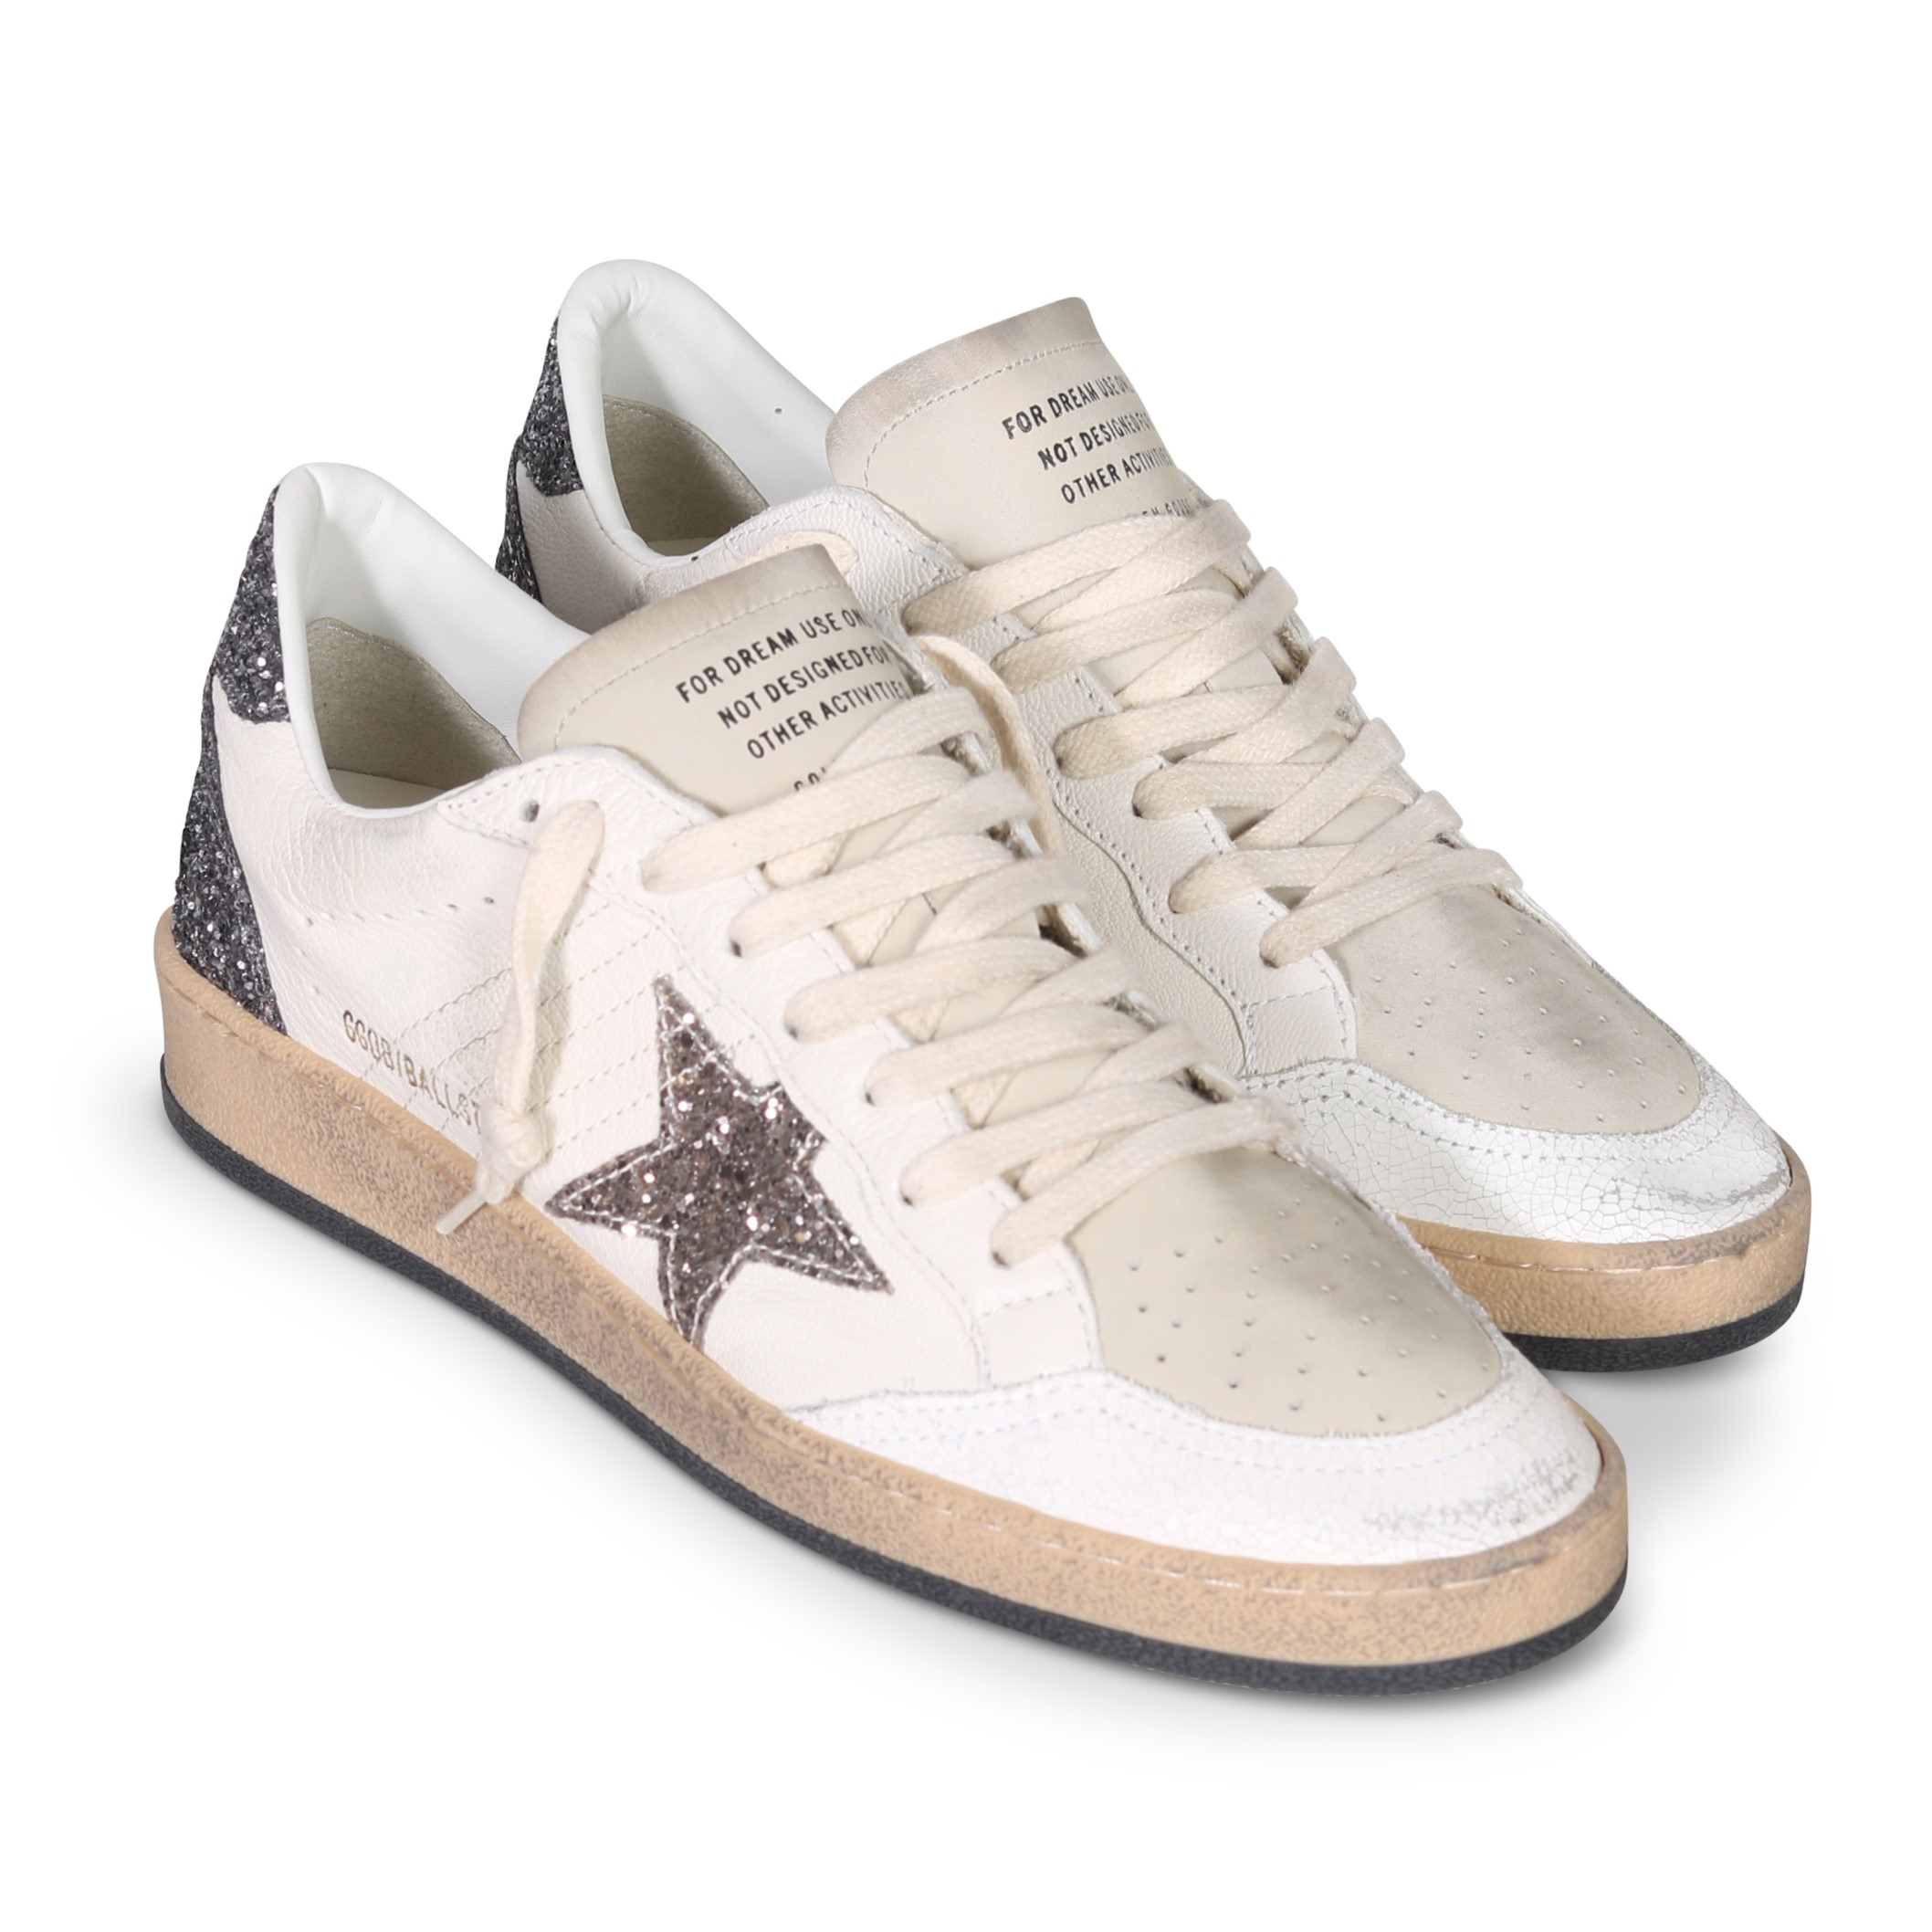 GOLDEN GOOSE Sneaker Ballstar in White/Cinder/Anthracite Glitter 40